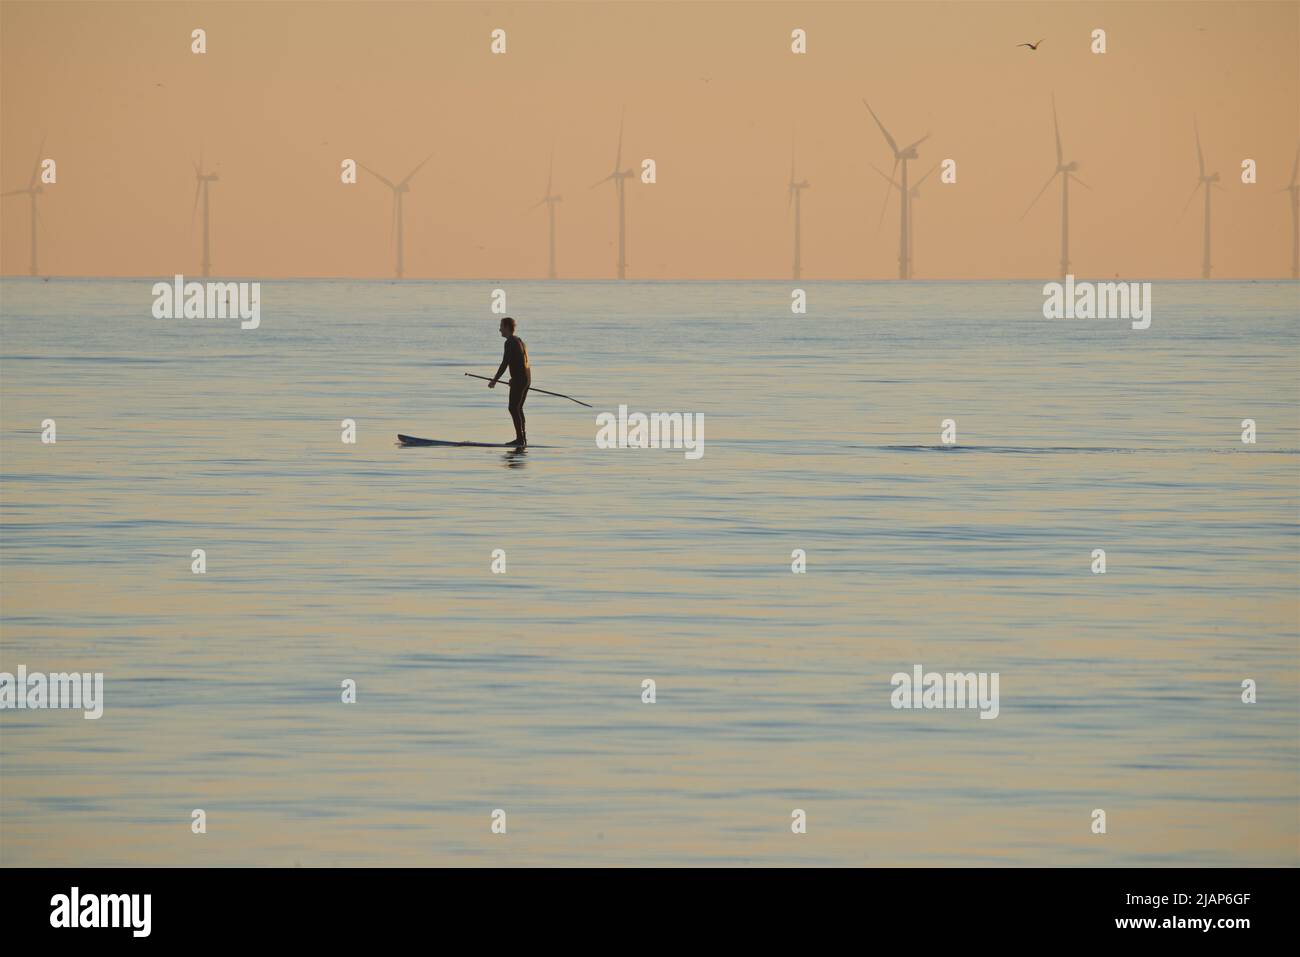 Persona remando en el mar frente a Brighton, East Sussex, Inglaterra, con el parque eólico Rampion en el horizonte lejano. Foto de stock